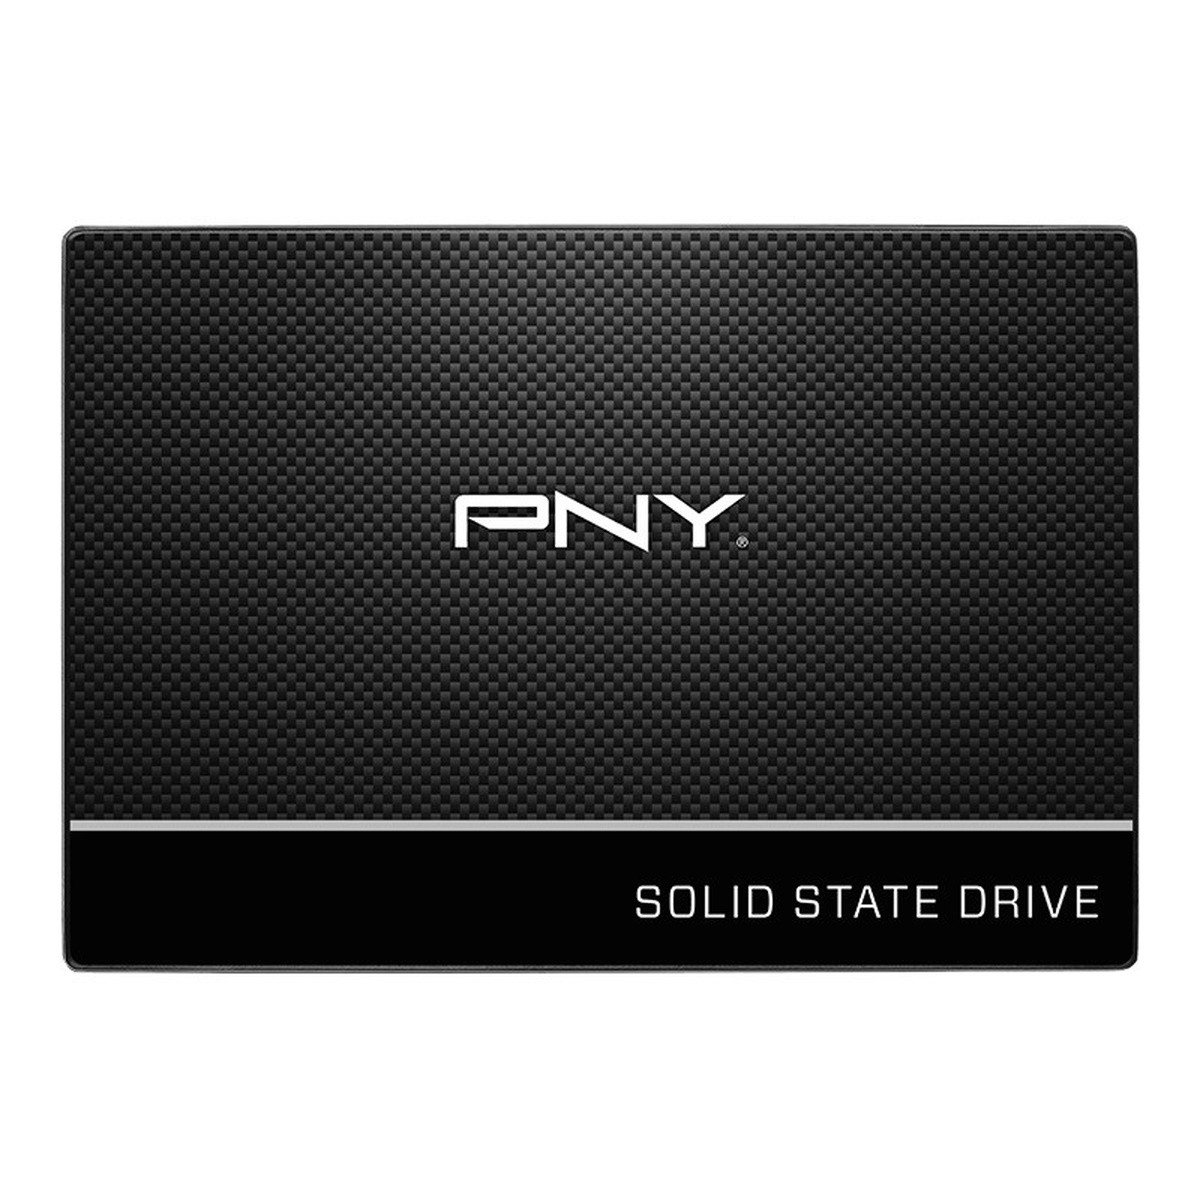 Pny SSD7CS900-250-RB